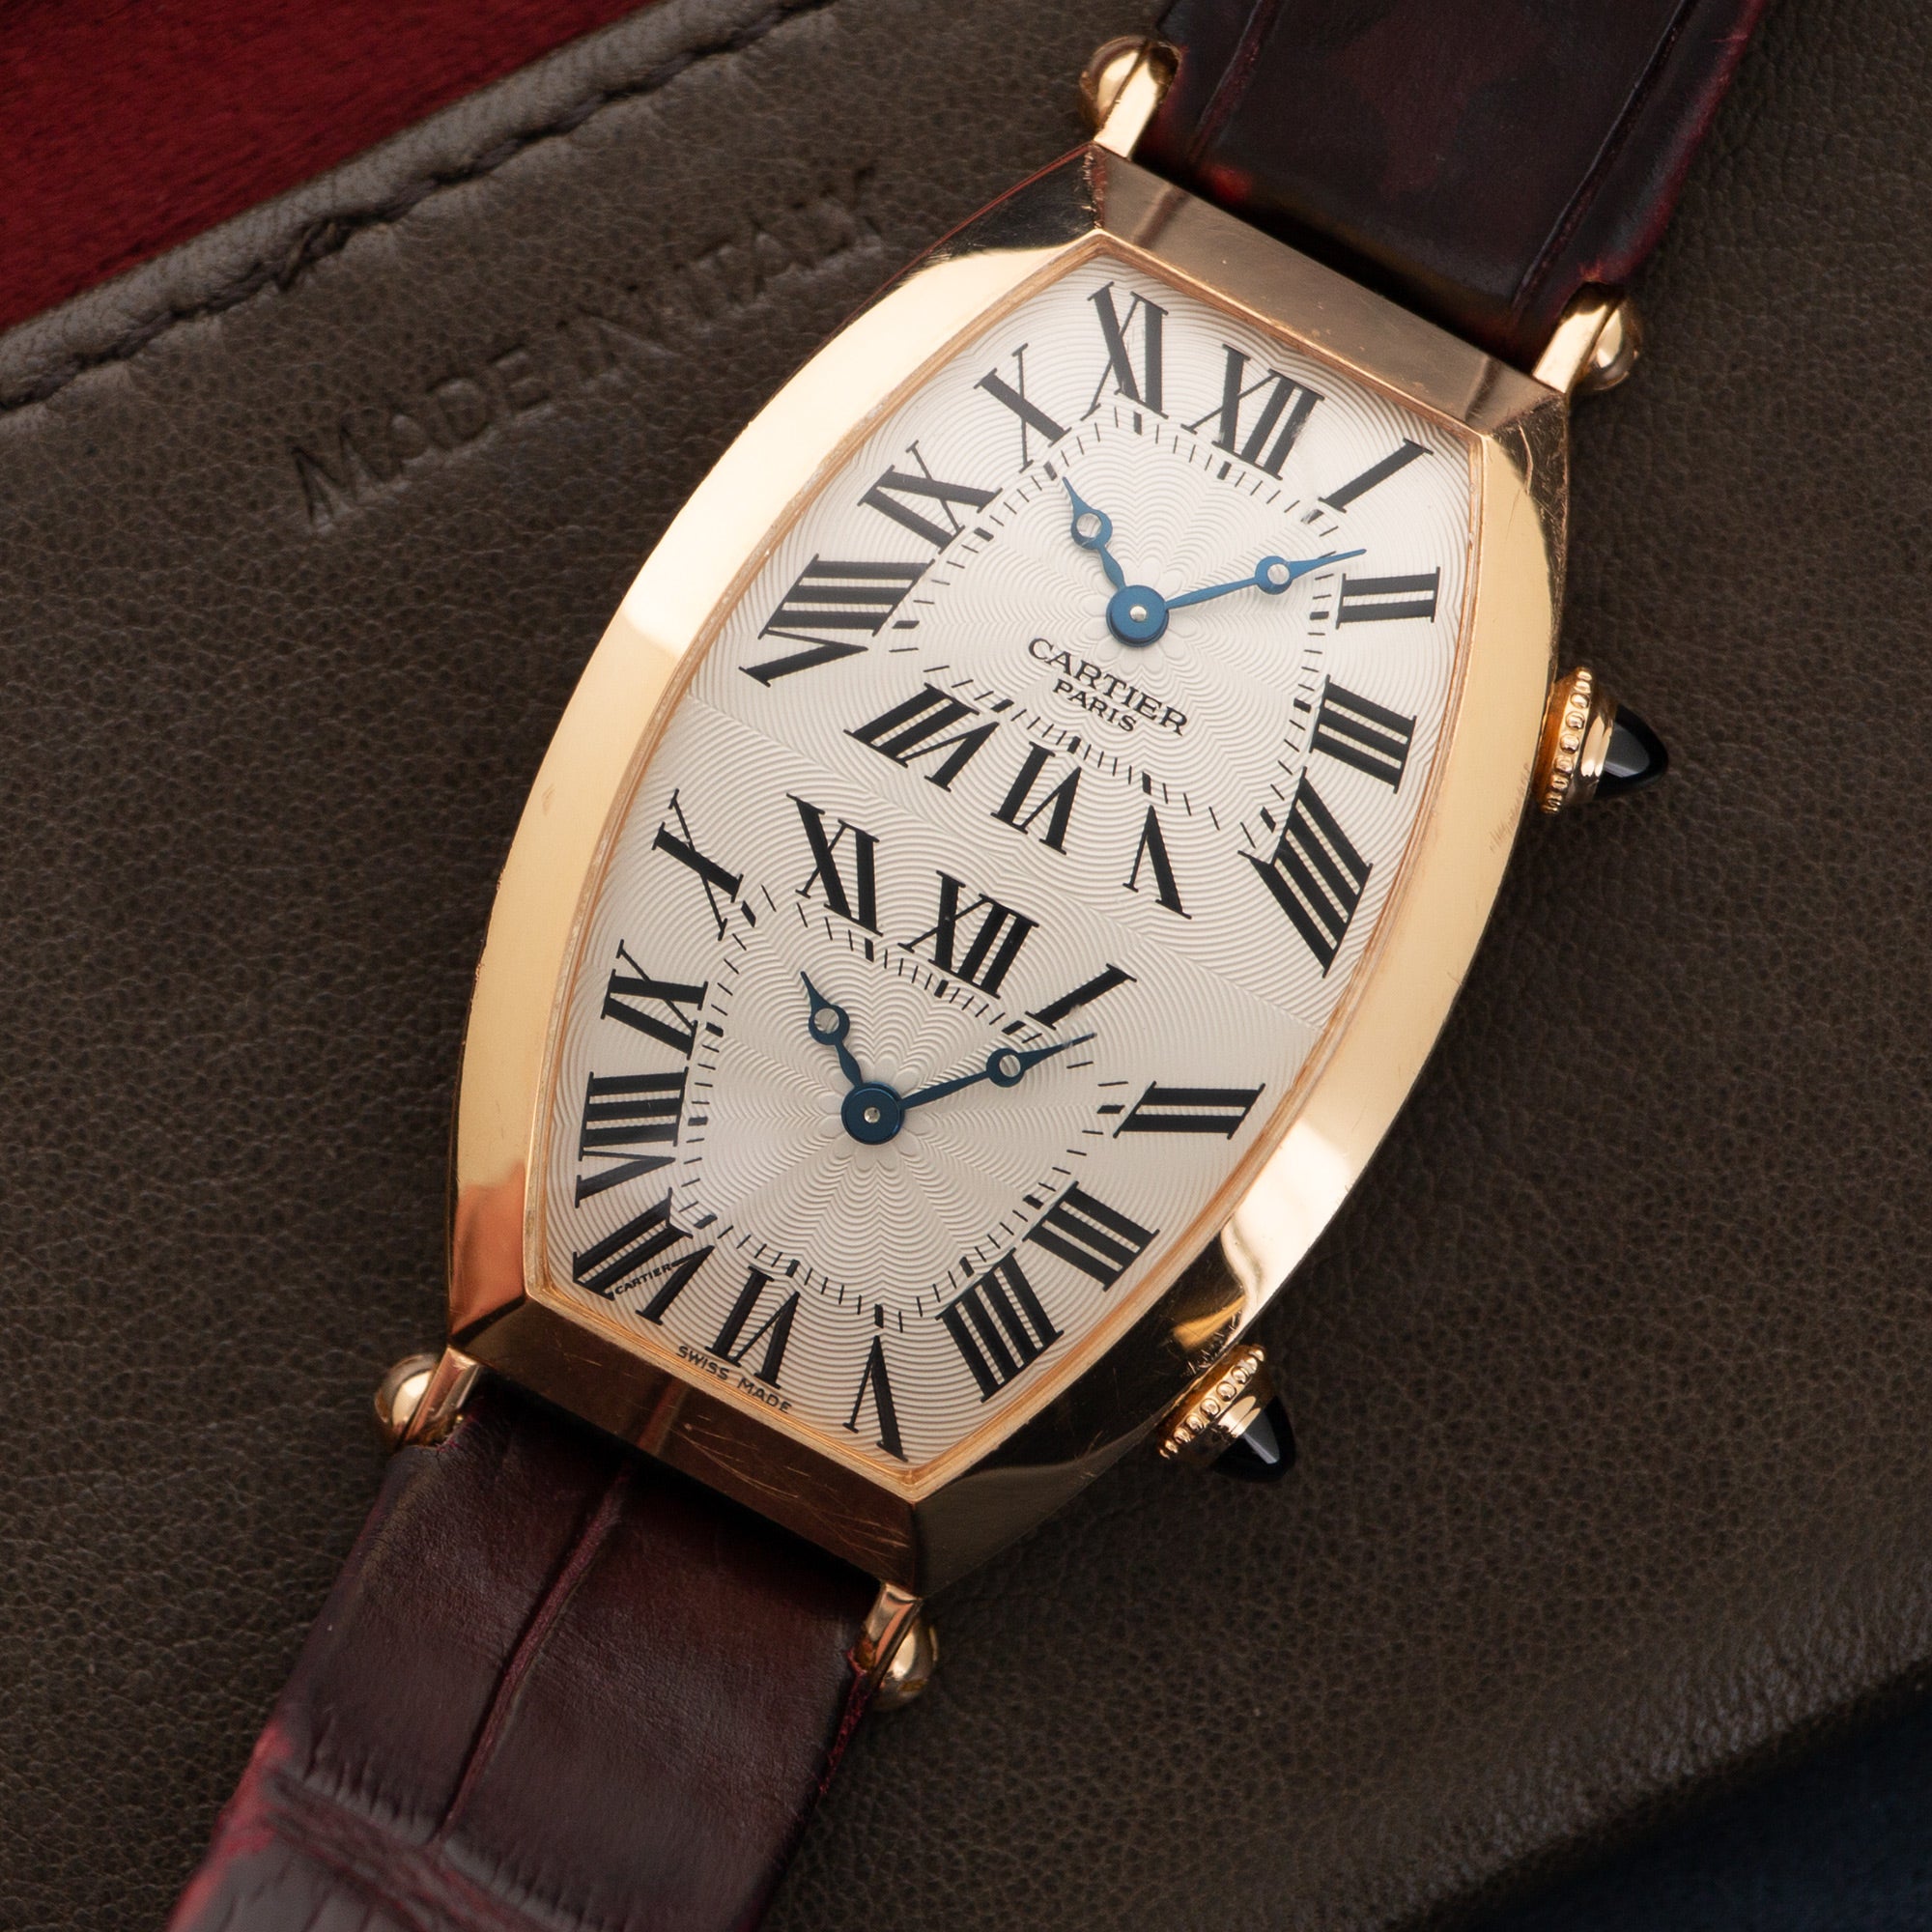 Cartier Rose Gold Tonneau Dual Time Zone Watch